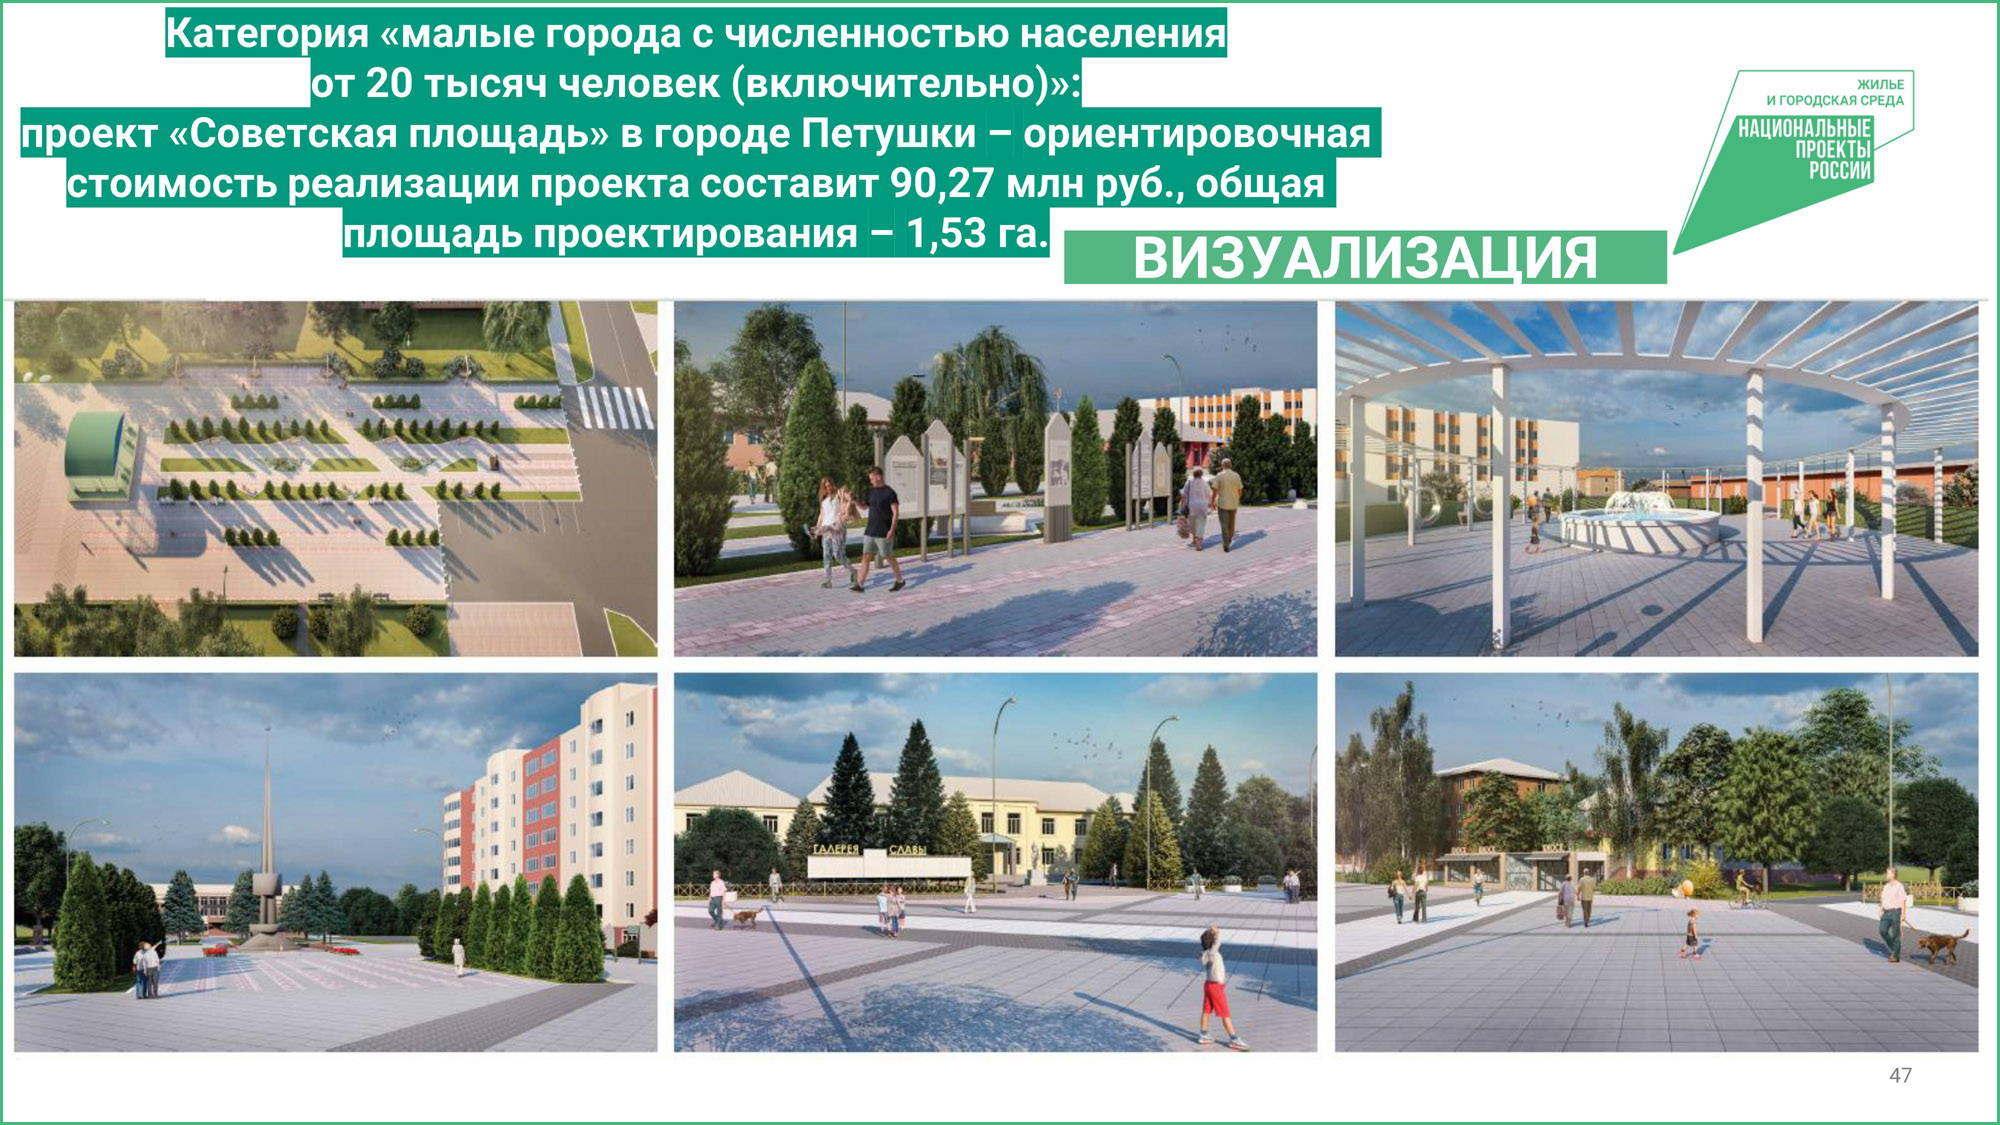 Petushki_square_project.jpg